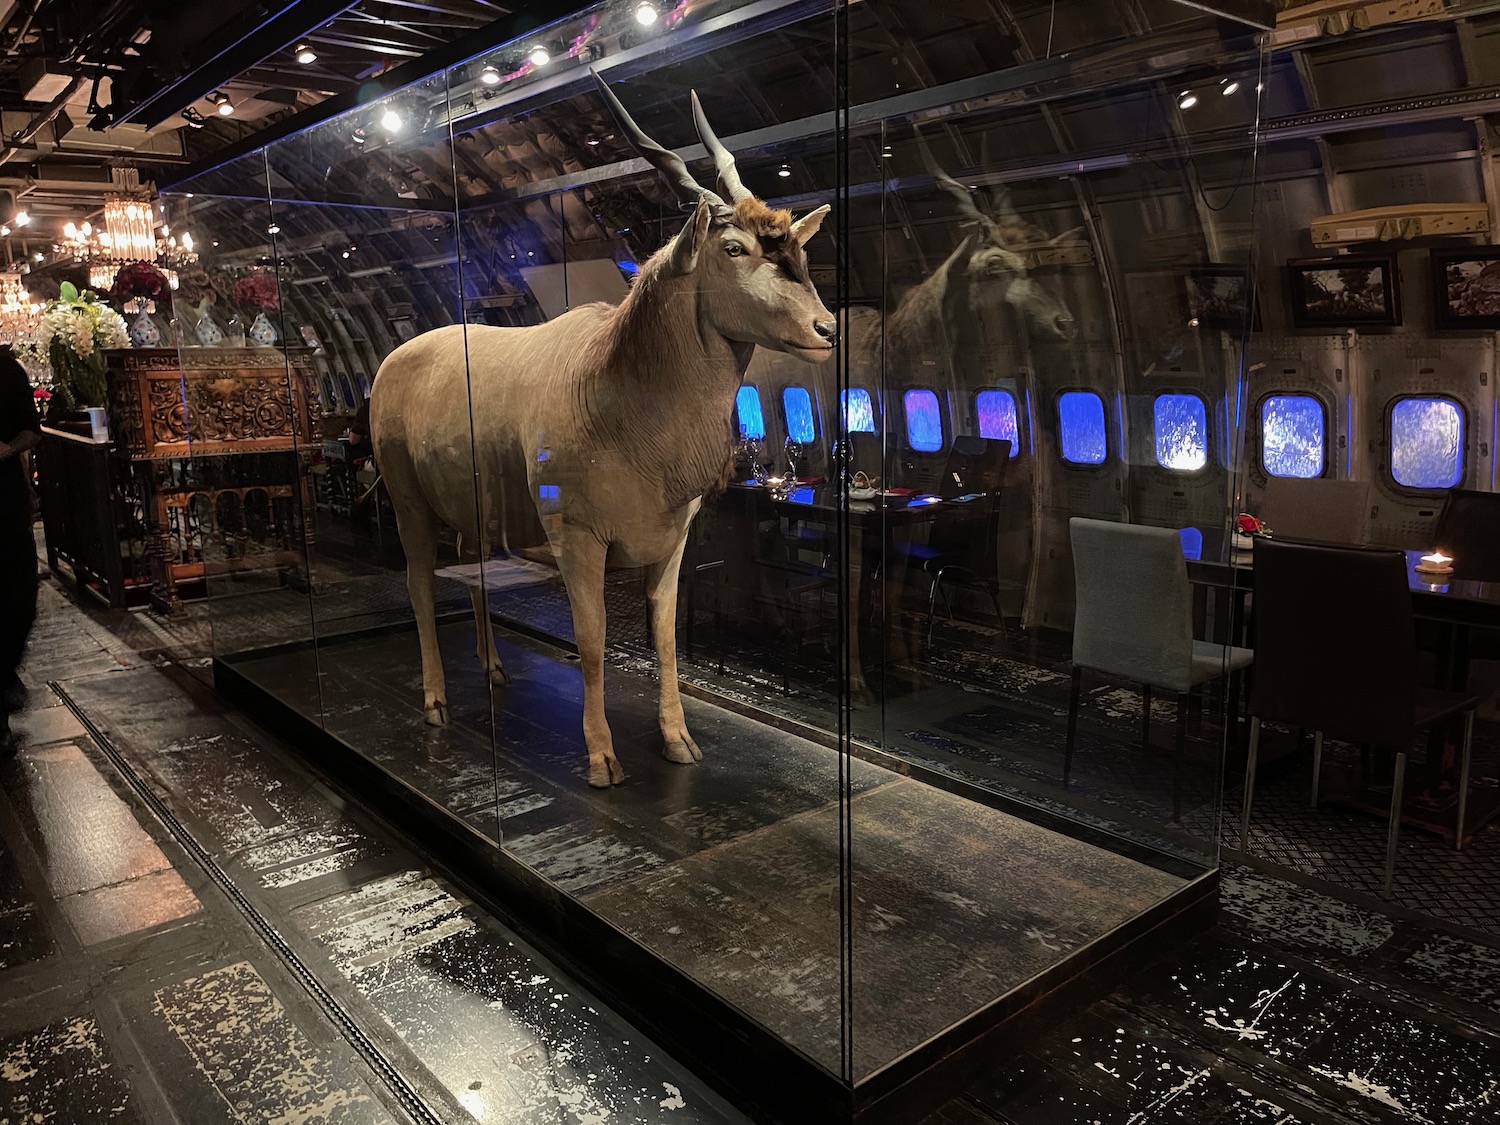 a statue of a goat in a glass case